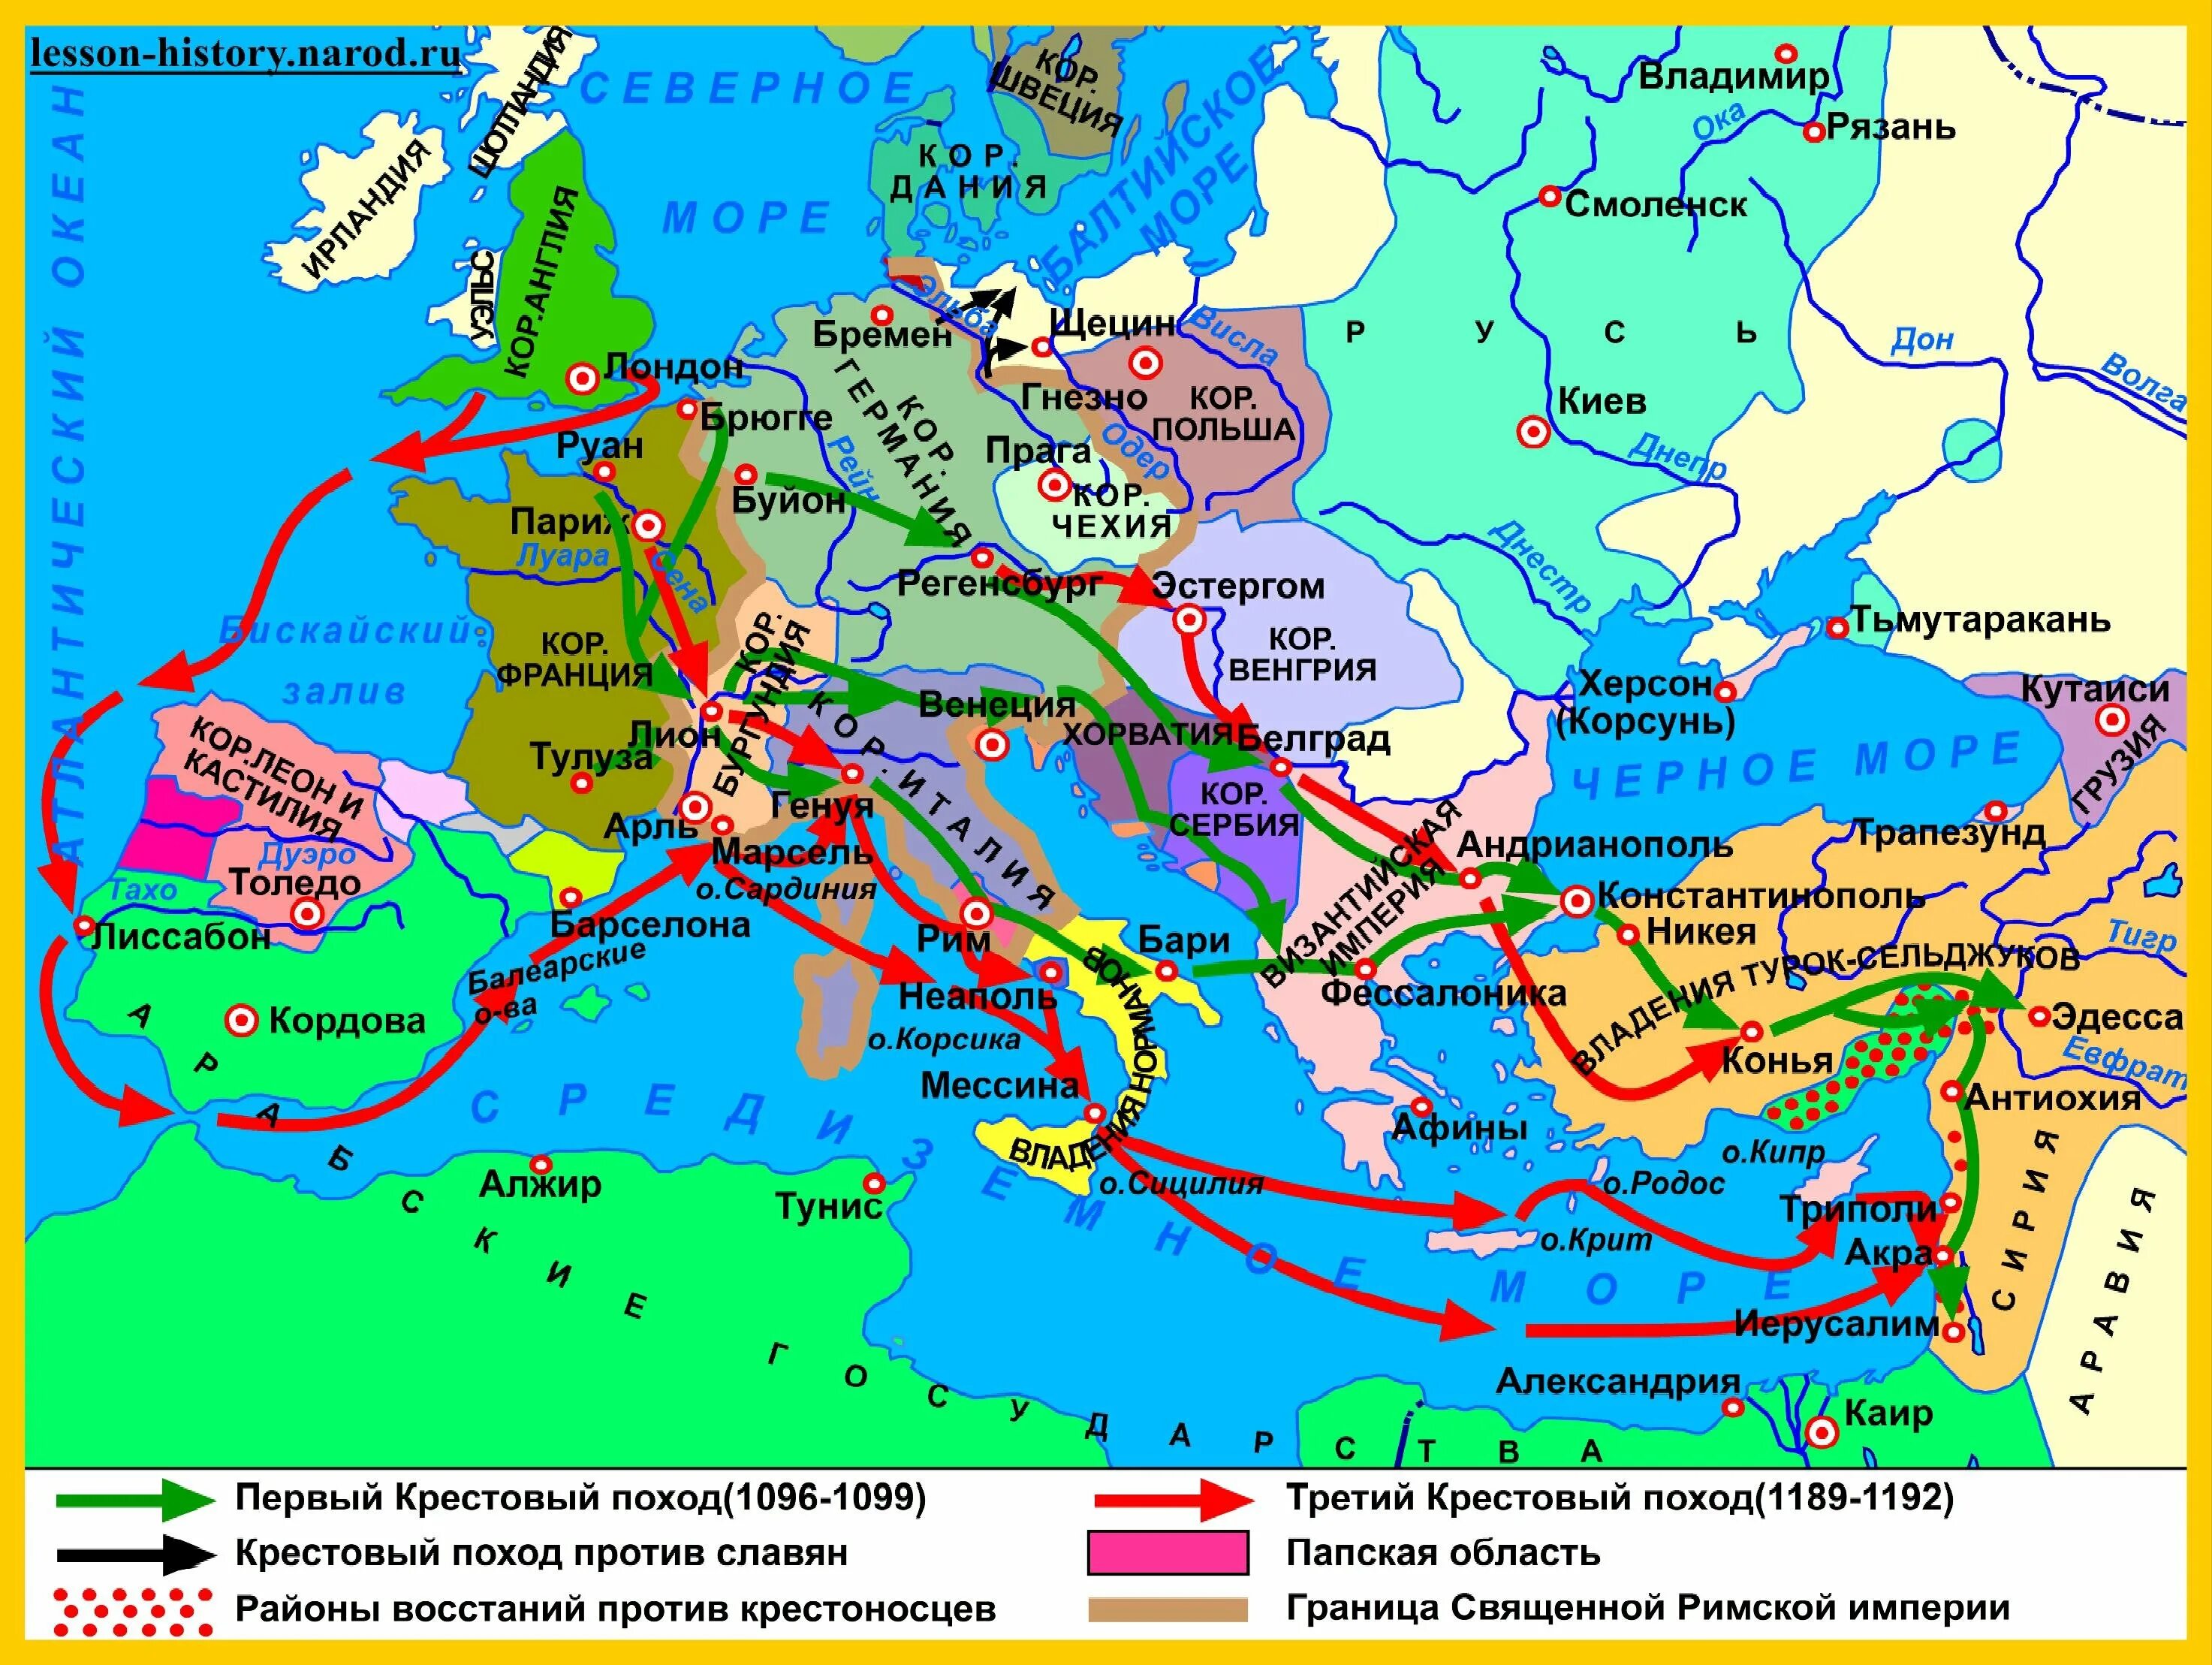 Контурные карты крестовых походов. Первый крестовый поход (1096-1099 г.). 2.3 Первый крестовый поход (1096—1099). Крестовые походы на Ближний Восток (1096 – 1272). Крестовые походы карта 1 поход.